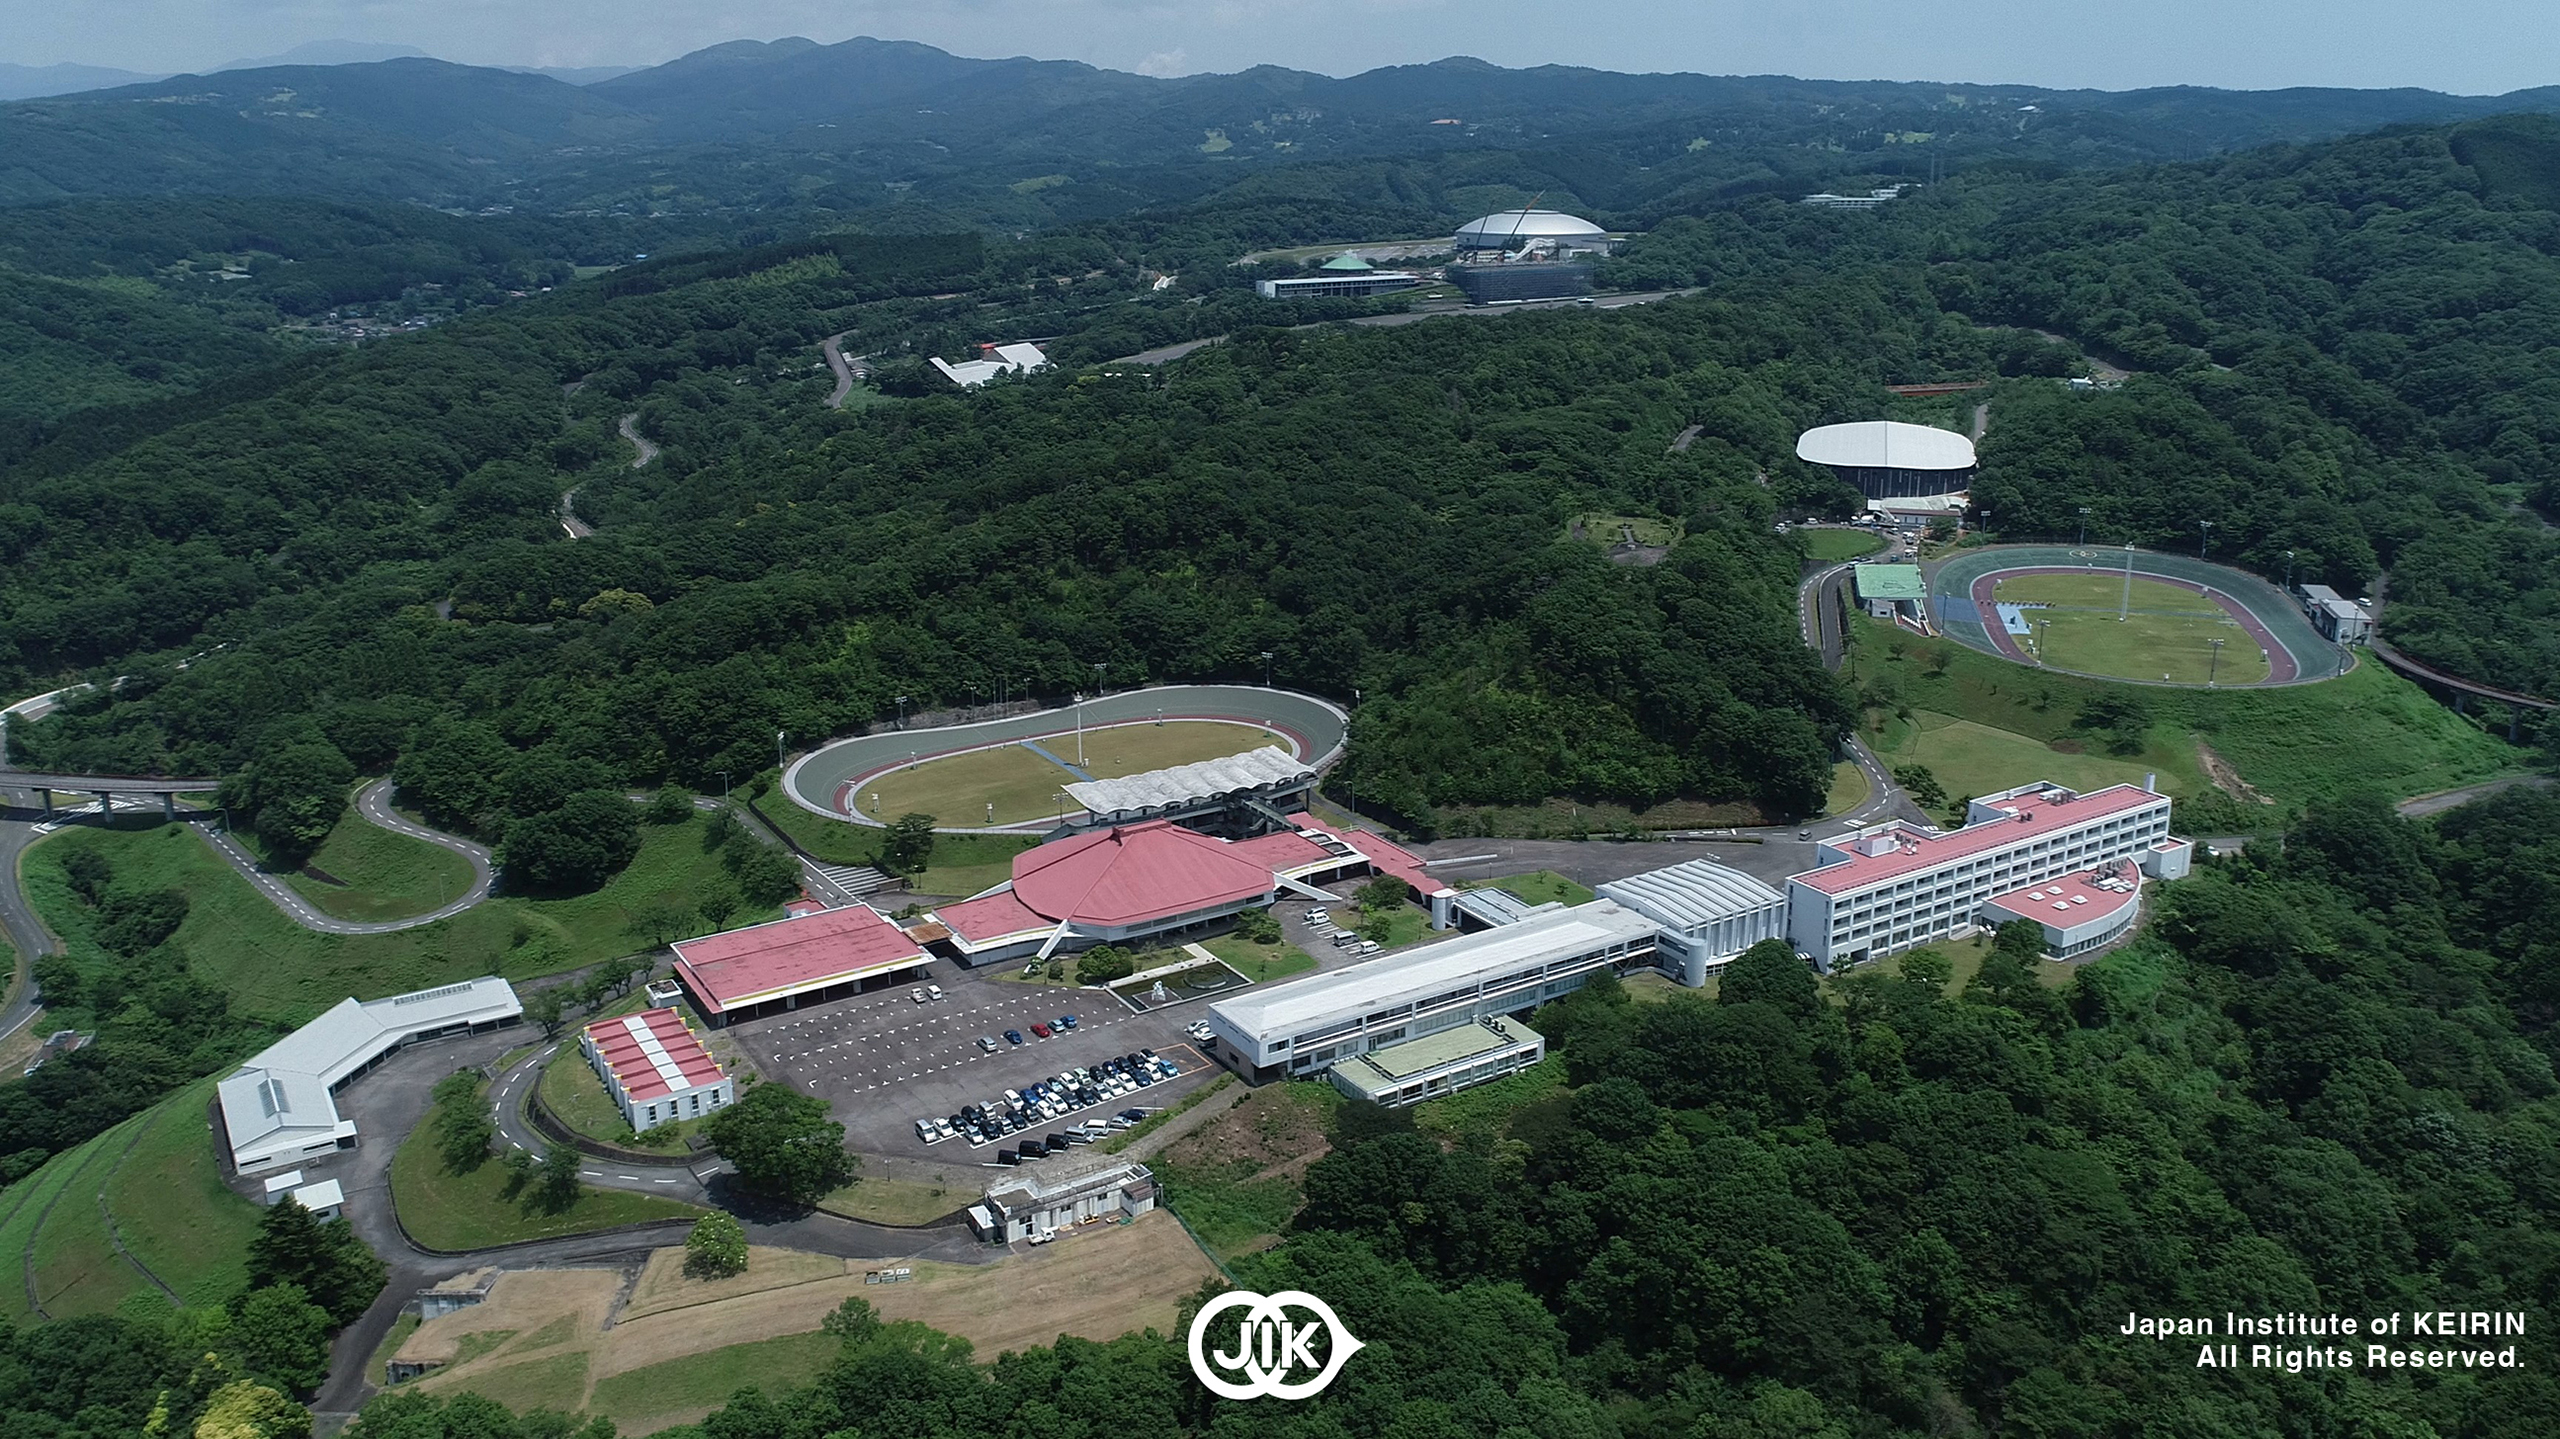 複数のバンクと各種施設を完備した日本競輪選手養成所。